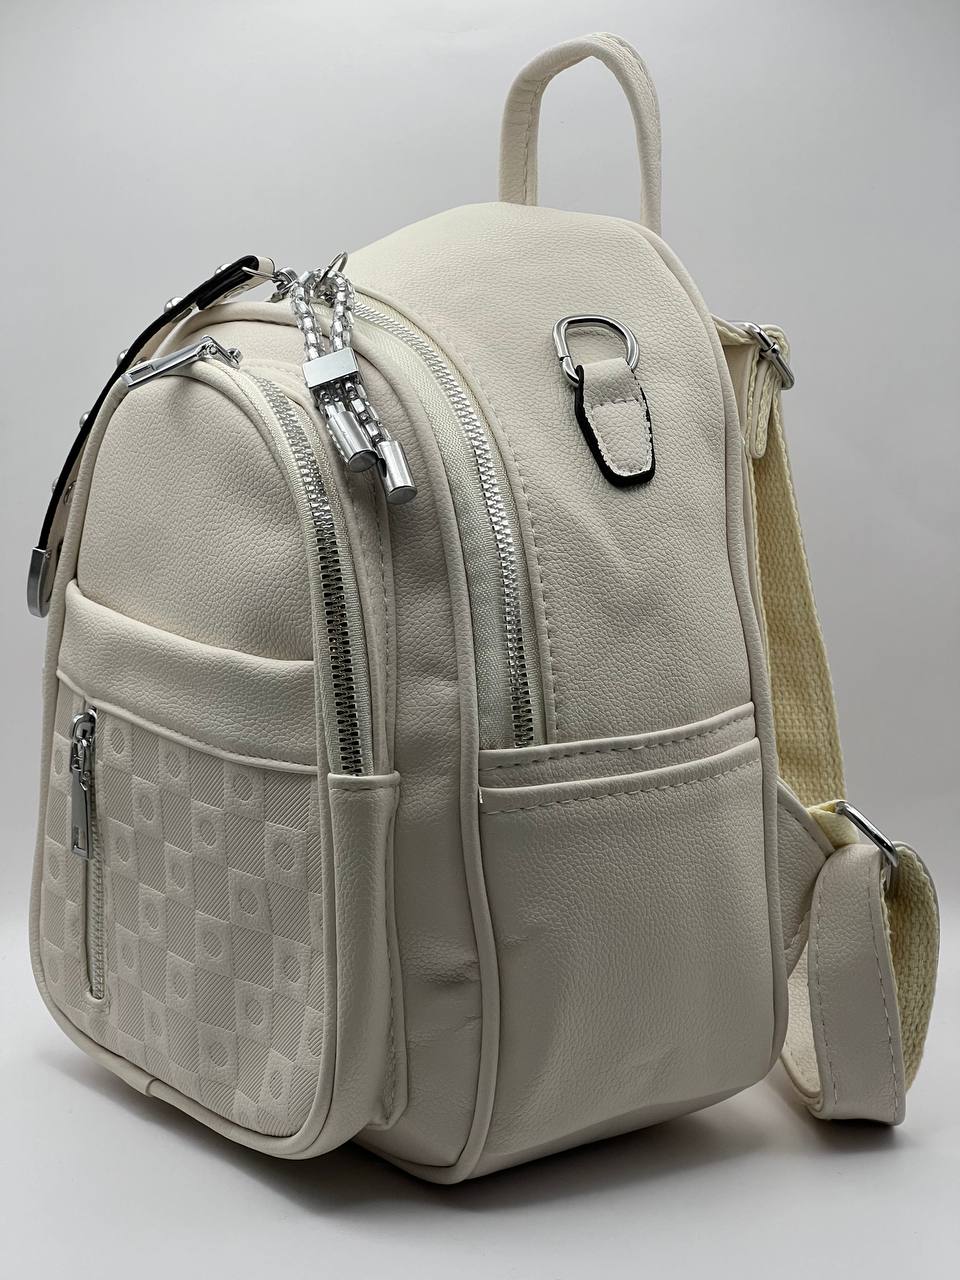 Сумка-рюкзак женская SunGold Р-59605 молочная, 27х22х12 см